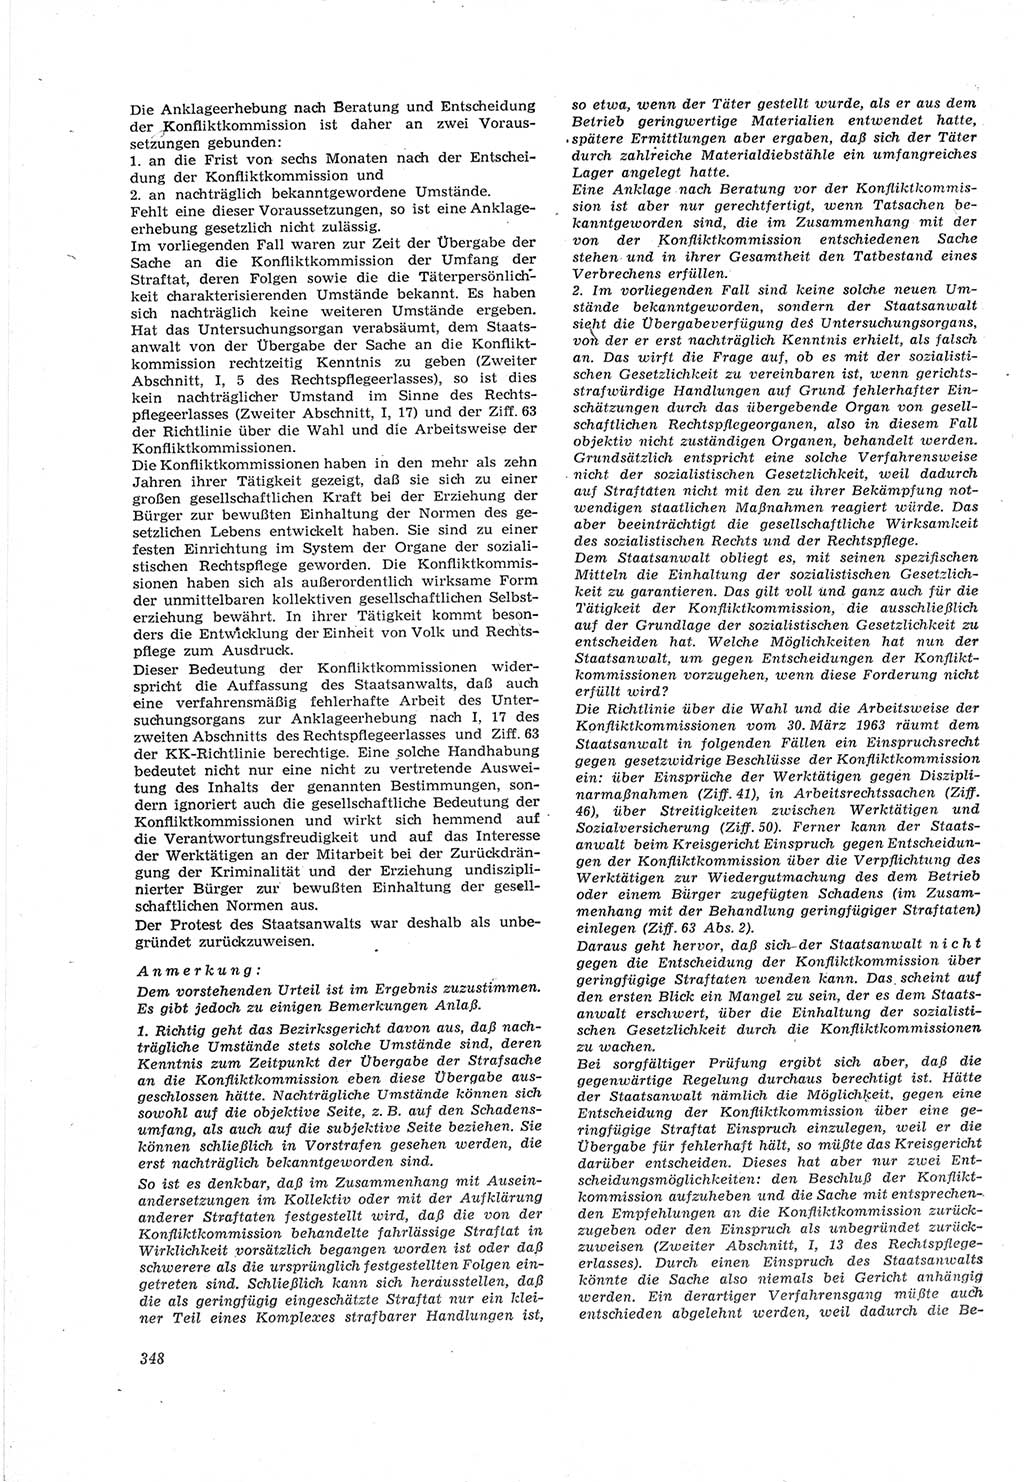 Neue Justiz (NJ), Zeitschrift für Recht und Rechtswissenschaft [Deutsche Demokratische Republik (DDR)], 18. Jahrgang 1964, Seite 348 (NJ DDR 1964, S. 348)